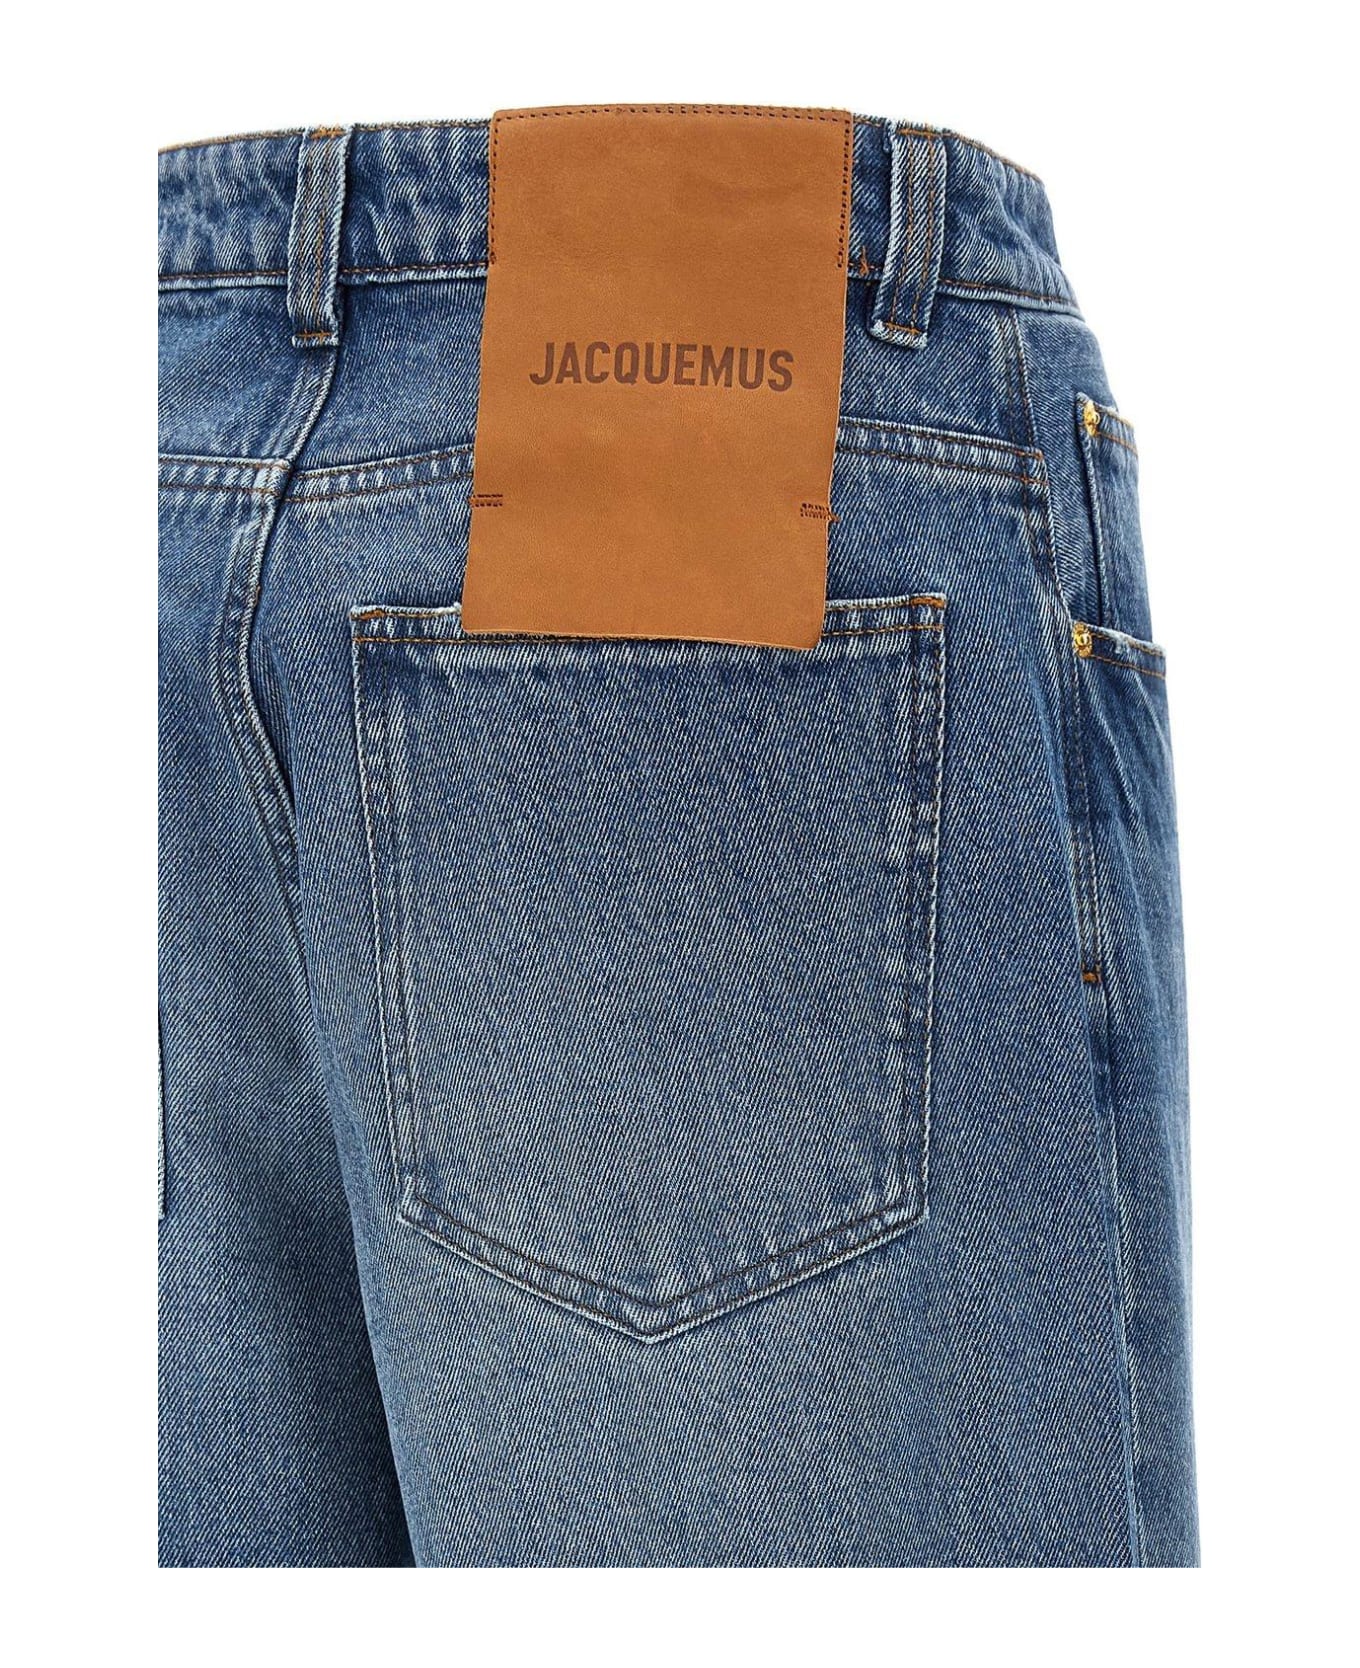 Jacquemus Le De-nimes Large Jeans - Blue/tabac 2 デニム